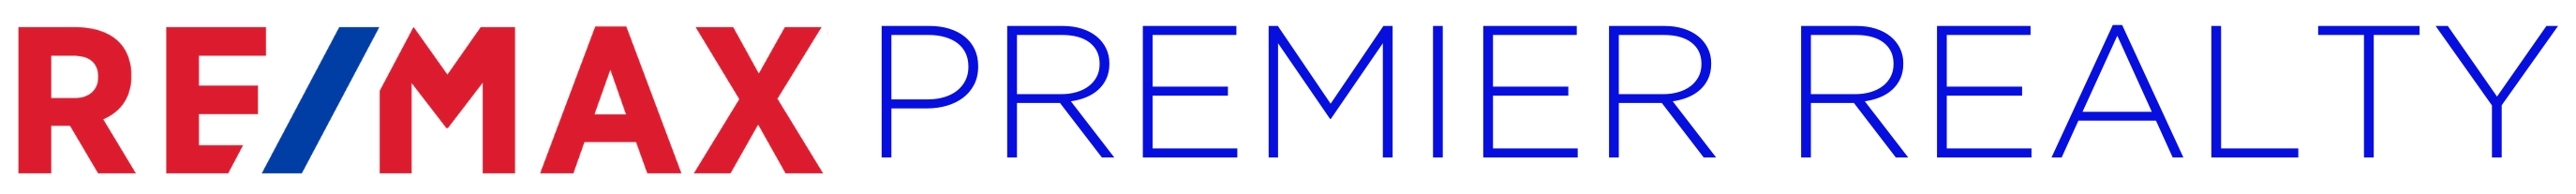 remax premier logo